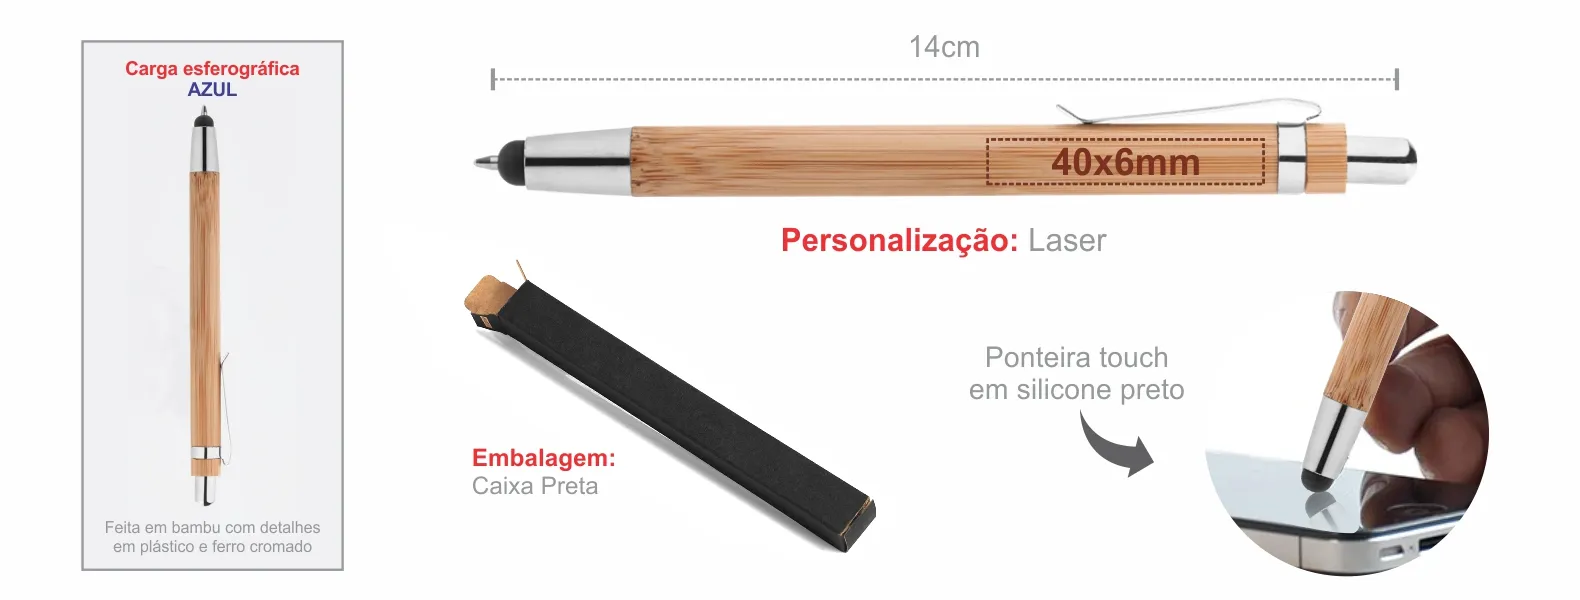 Caneta esferografica em bambu com ponta touch. Possui detalhes em plástico e ferro cromado; carga esferográfica azul, acionada com um click.